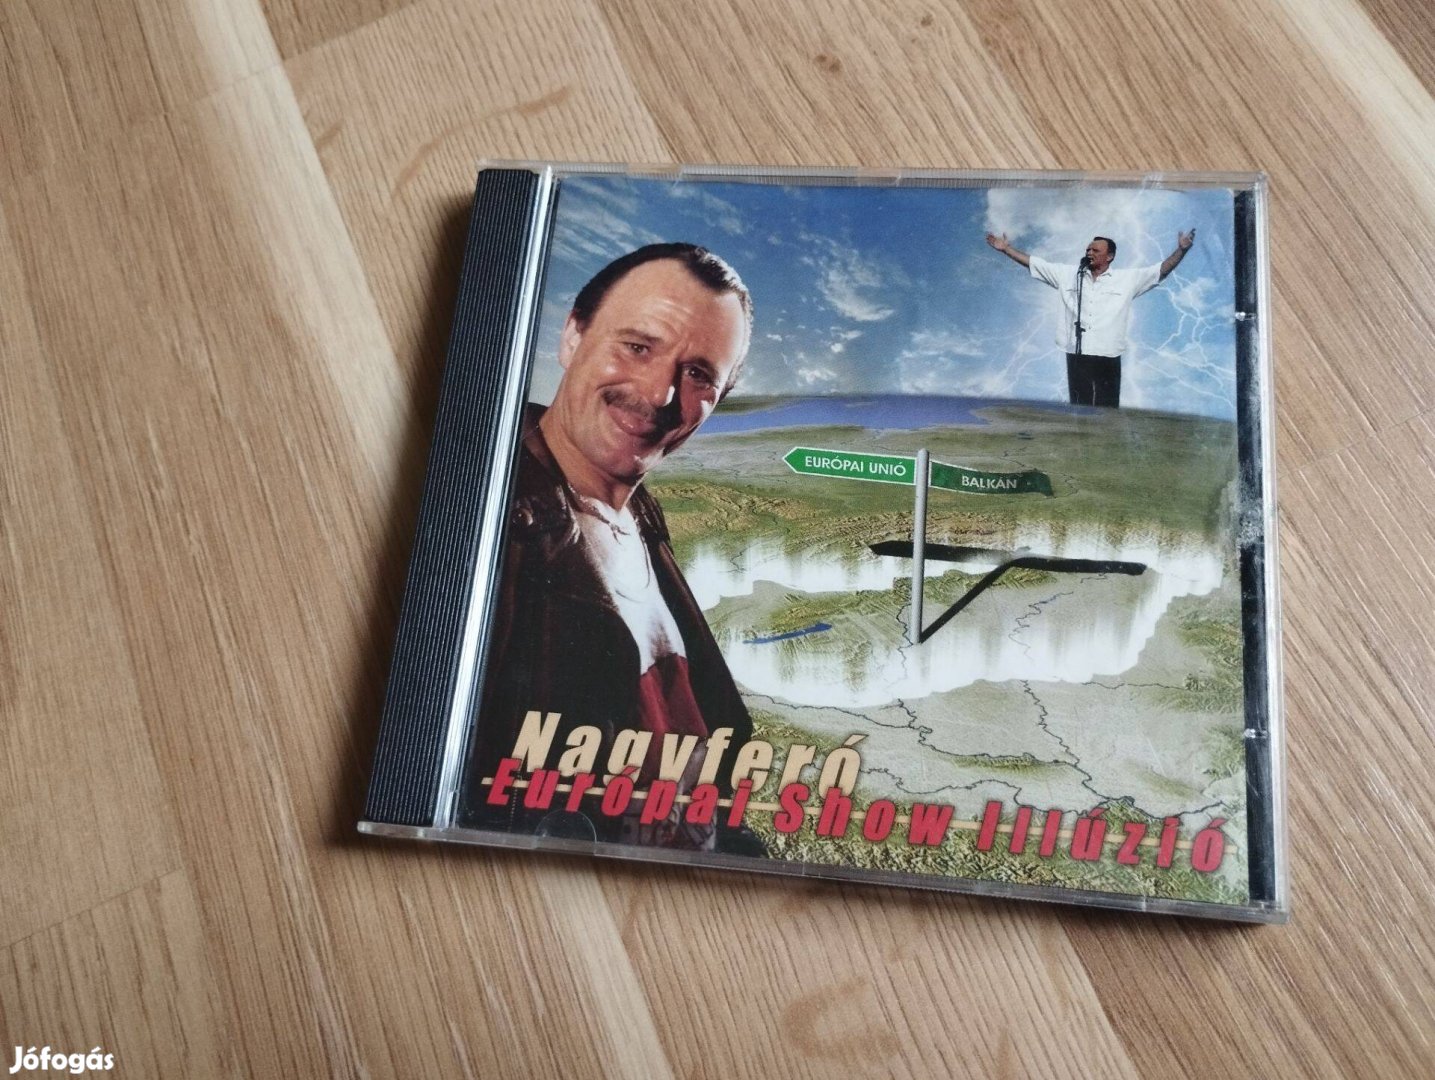 Nagy Feró -Europai show illúzió CD